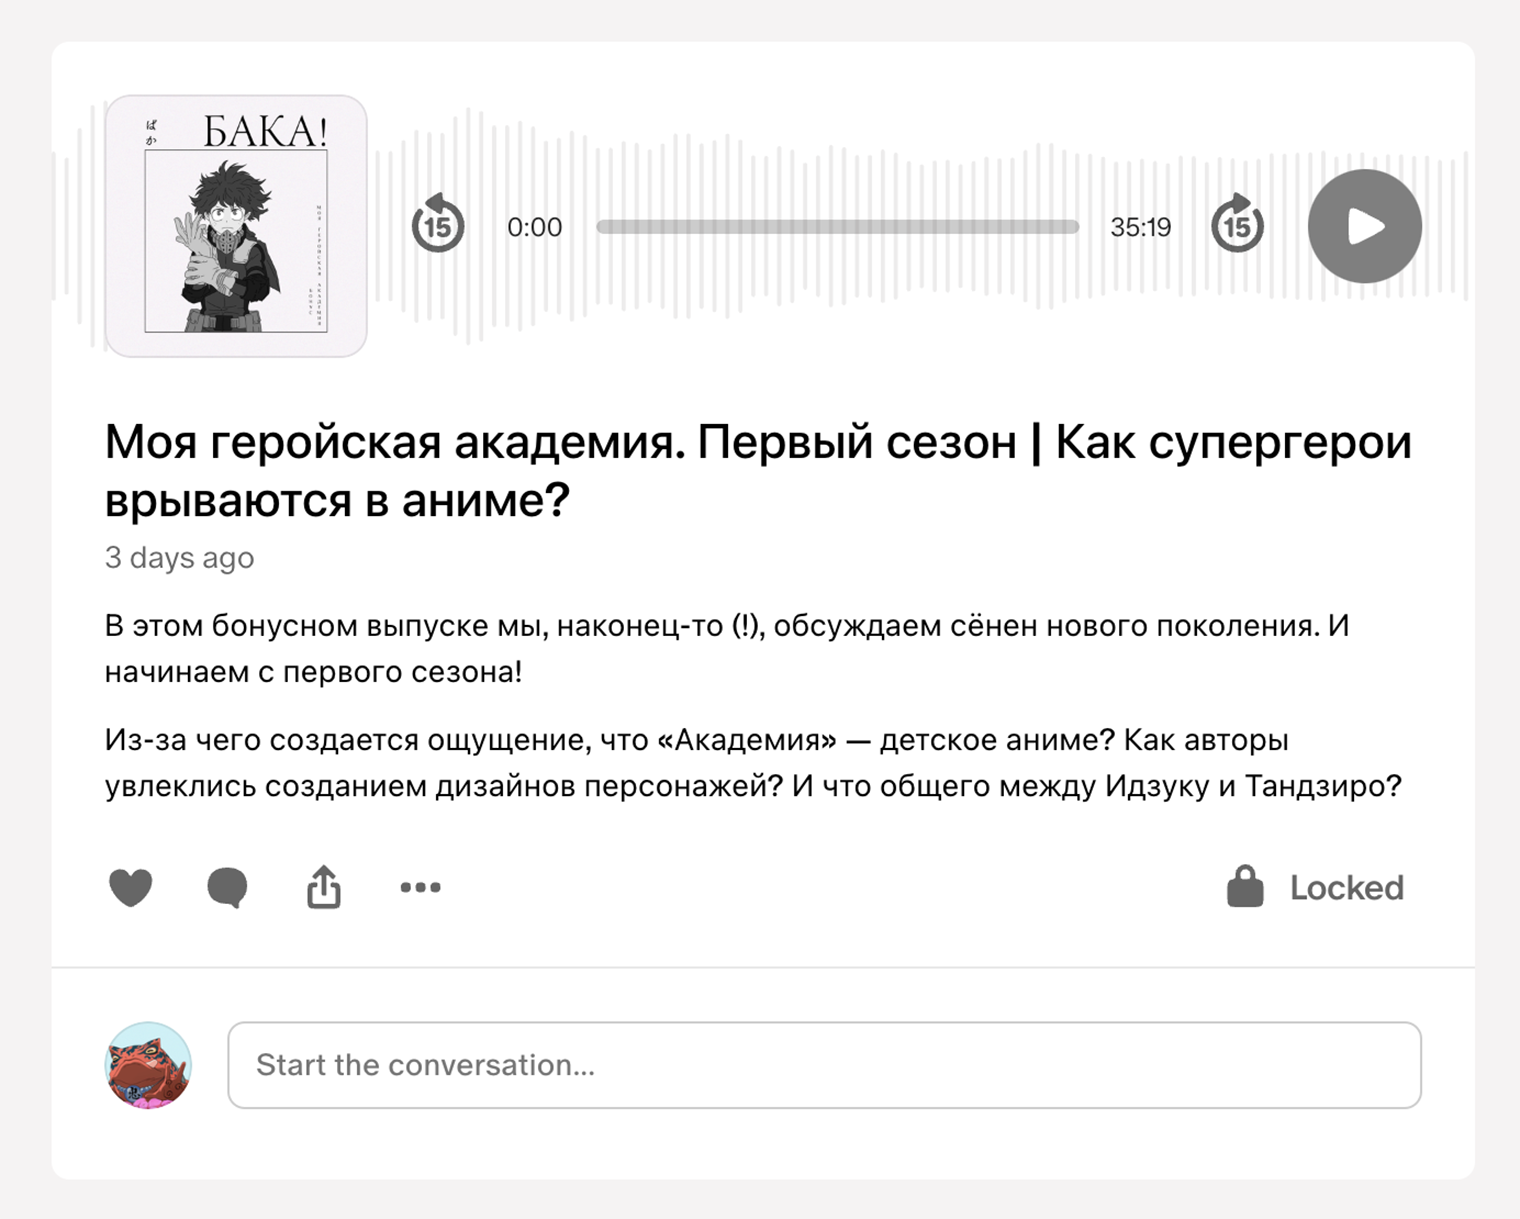 Бонусные эпизоды выходят на «Патреоне», «Бусти», во «Вконтакте» и даже в закрытом телеграм-канале